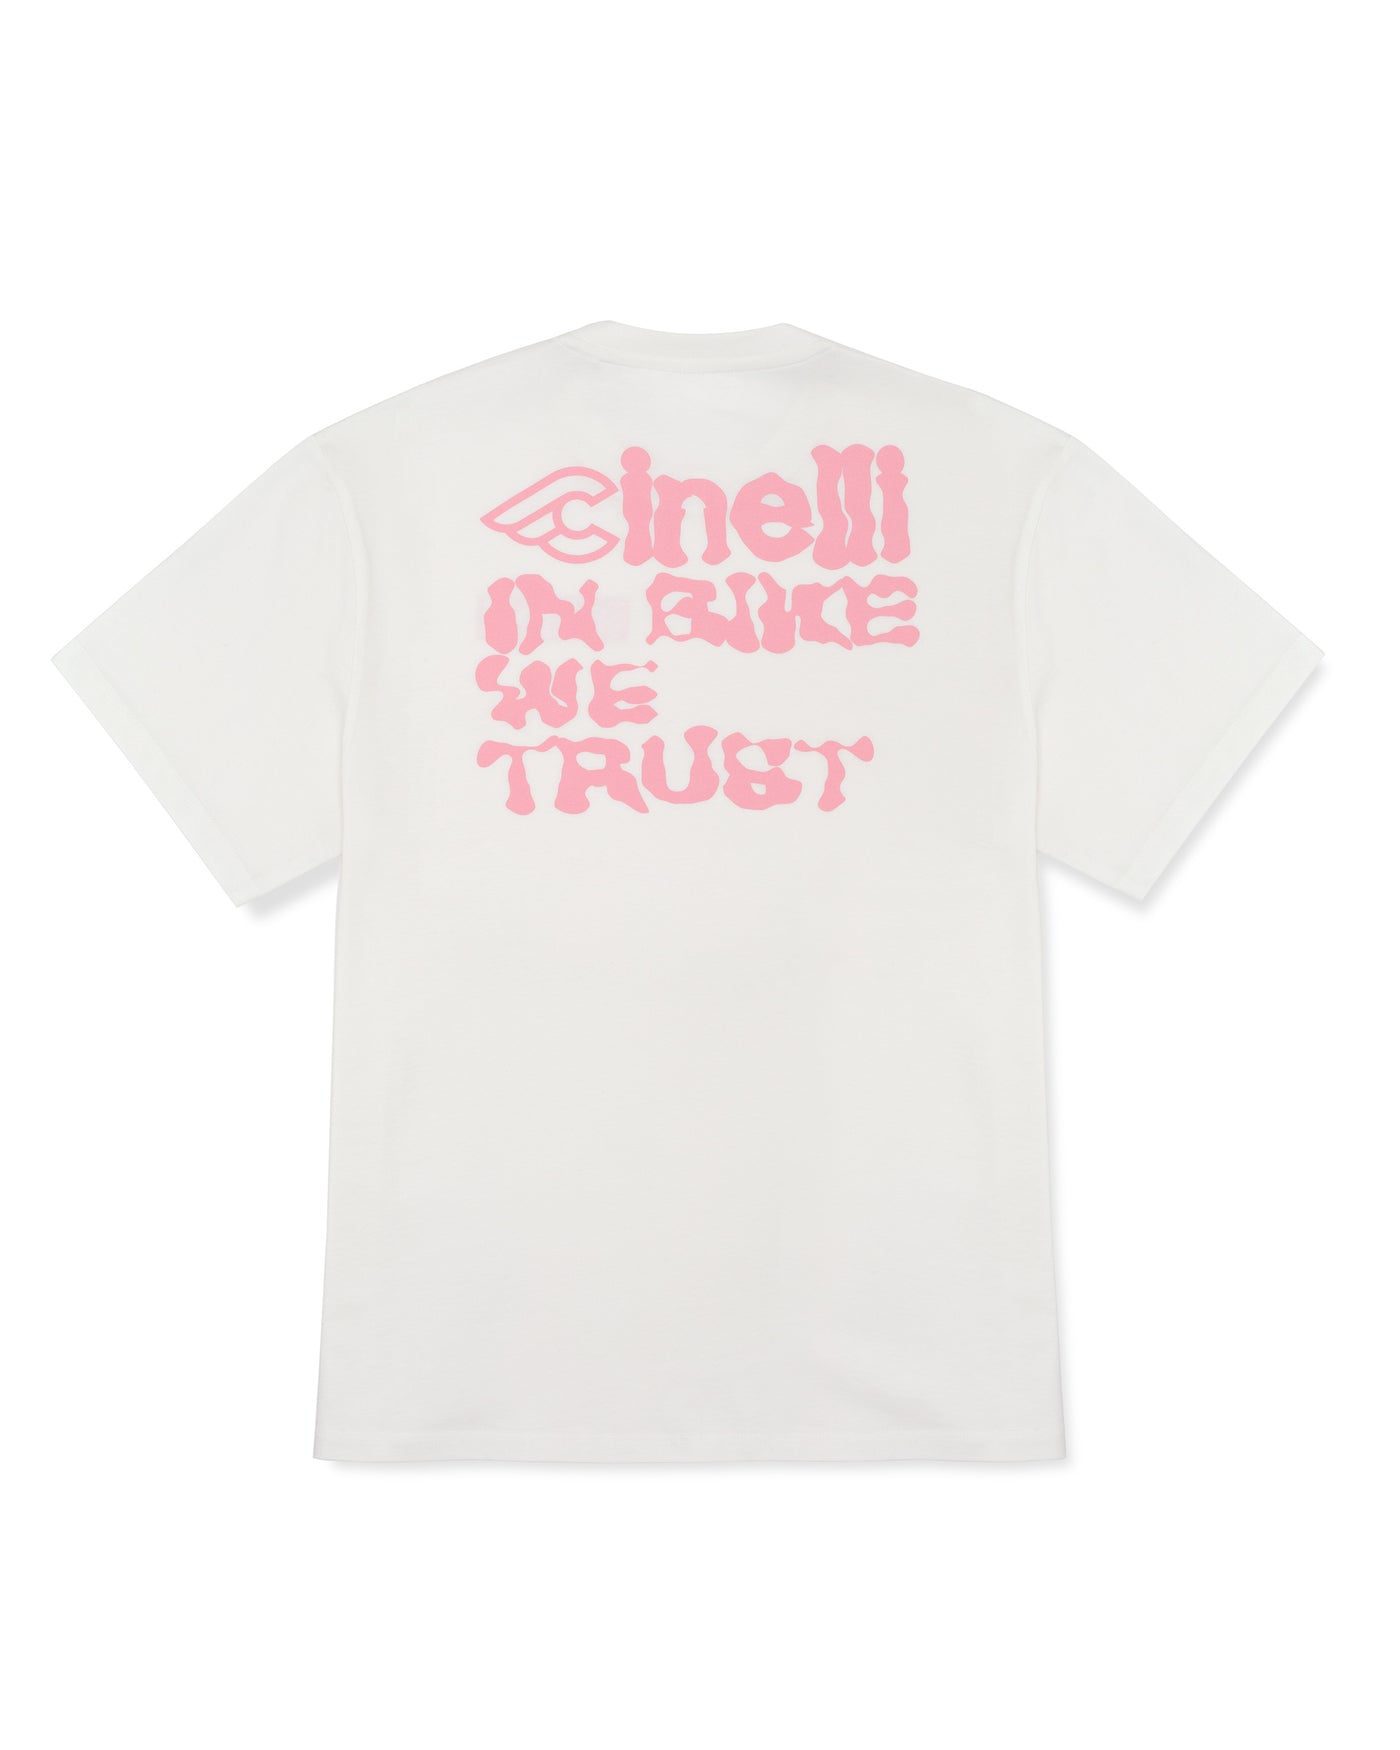 T-SHIRT IN-BIKE-WE-TRUST WHITE, T-Shirt, IMG.2